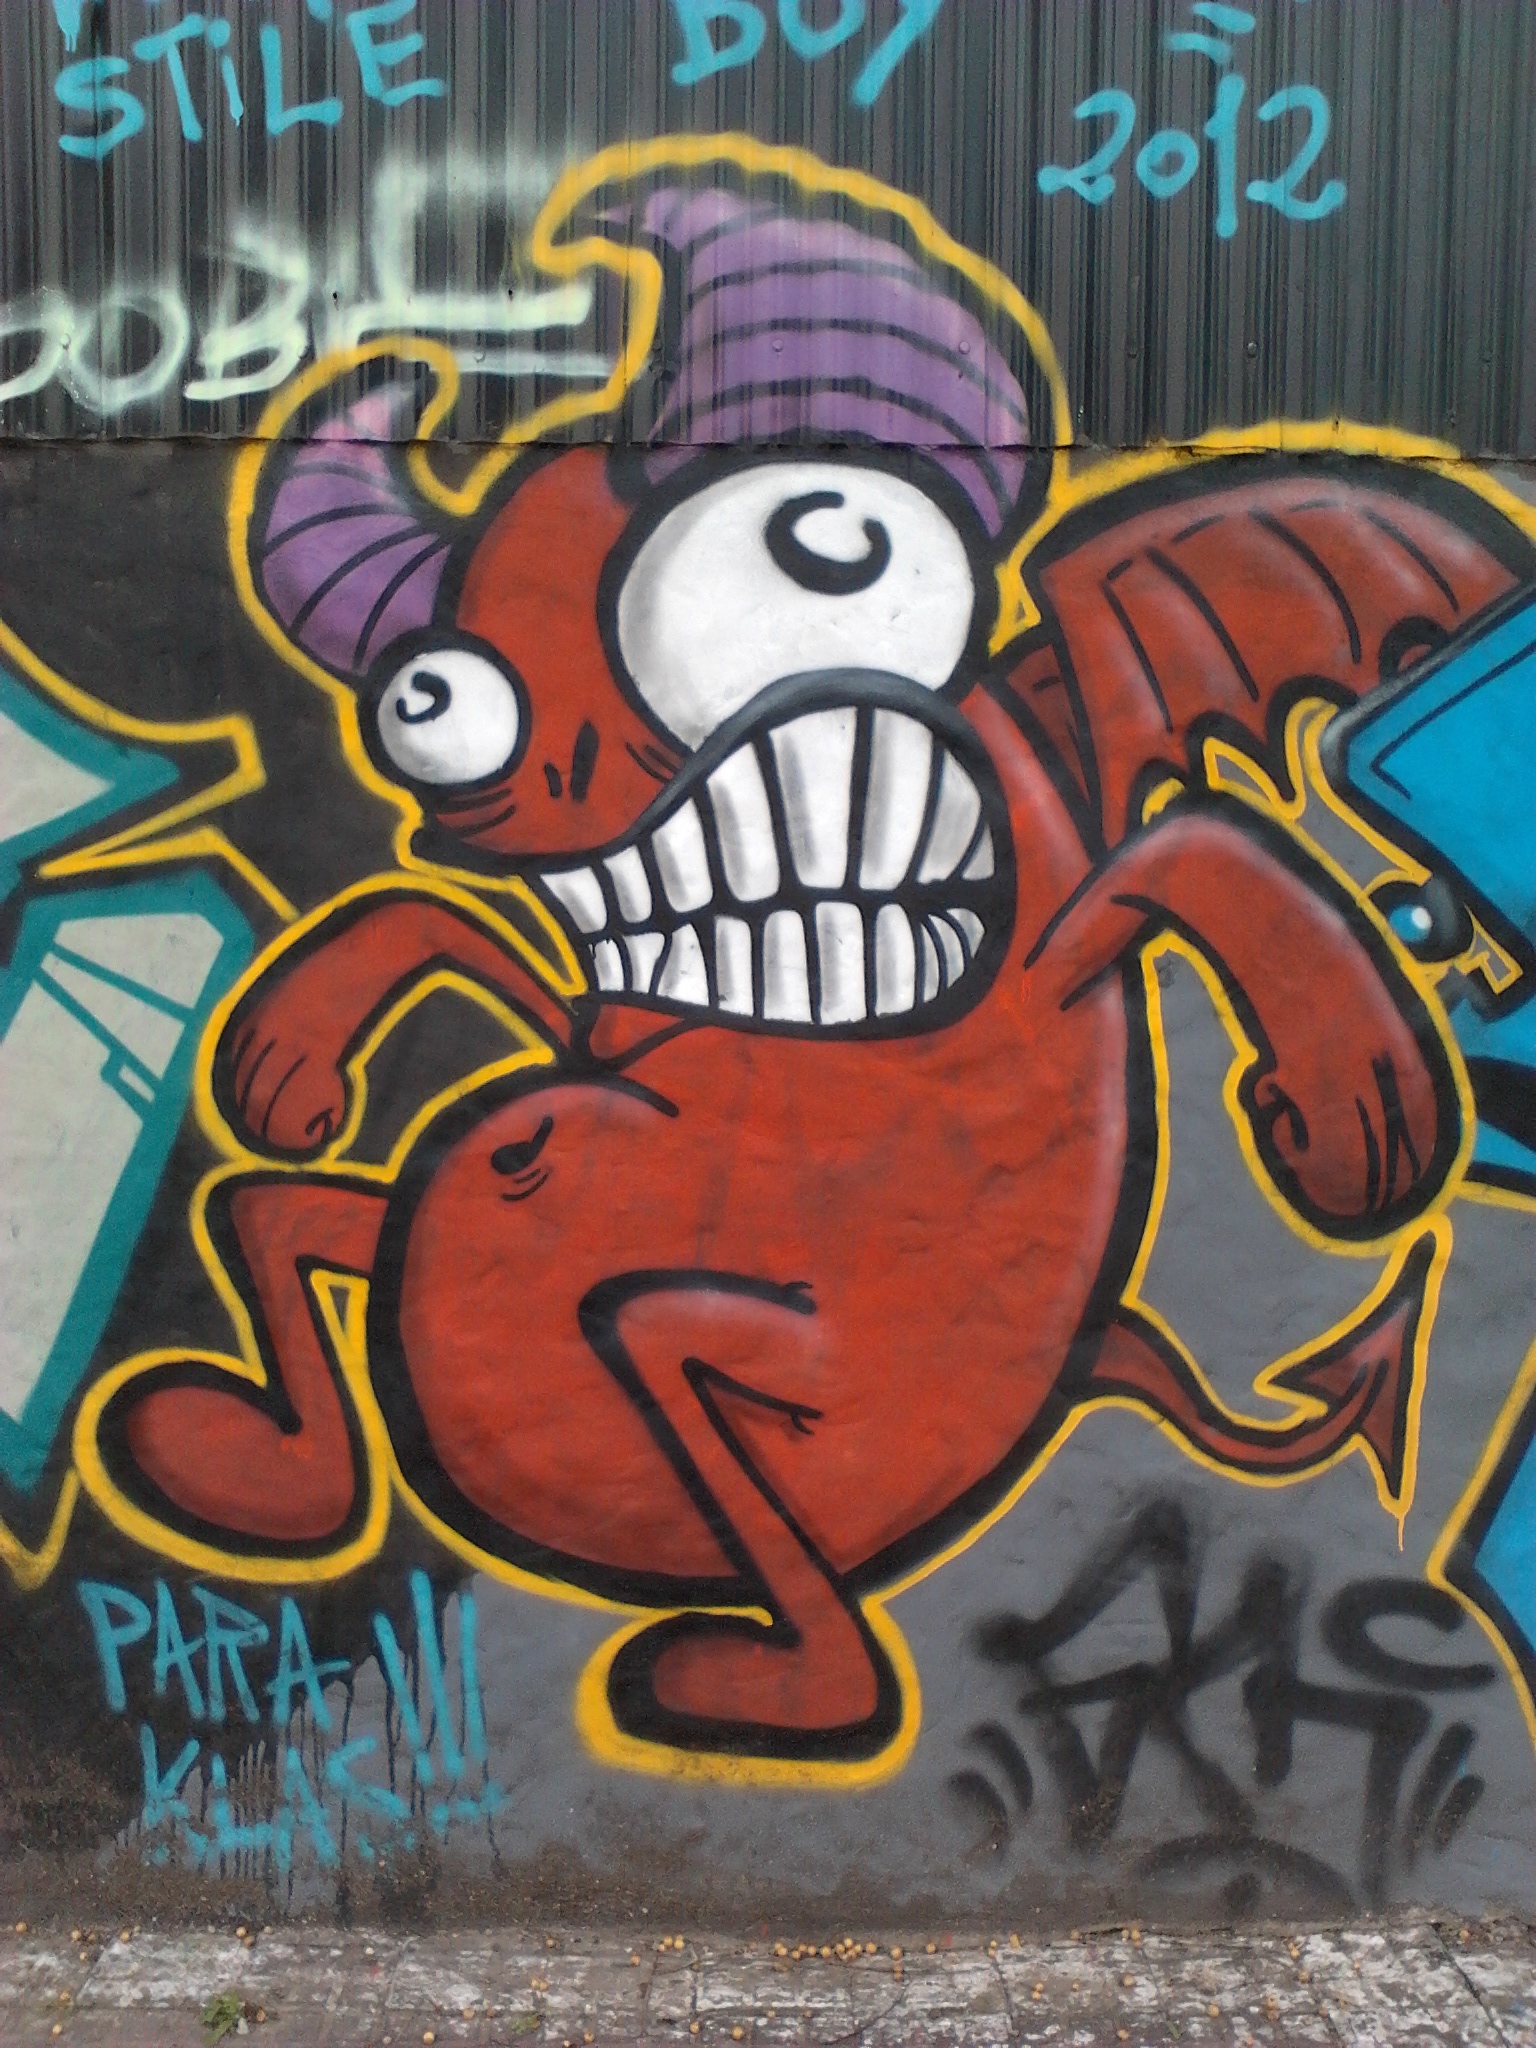 Contoh Grafiti File Grafiti diablito La Plata jpg Wikimedia Commons